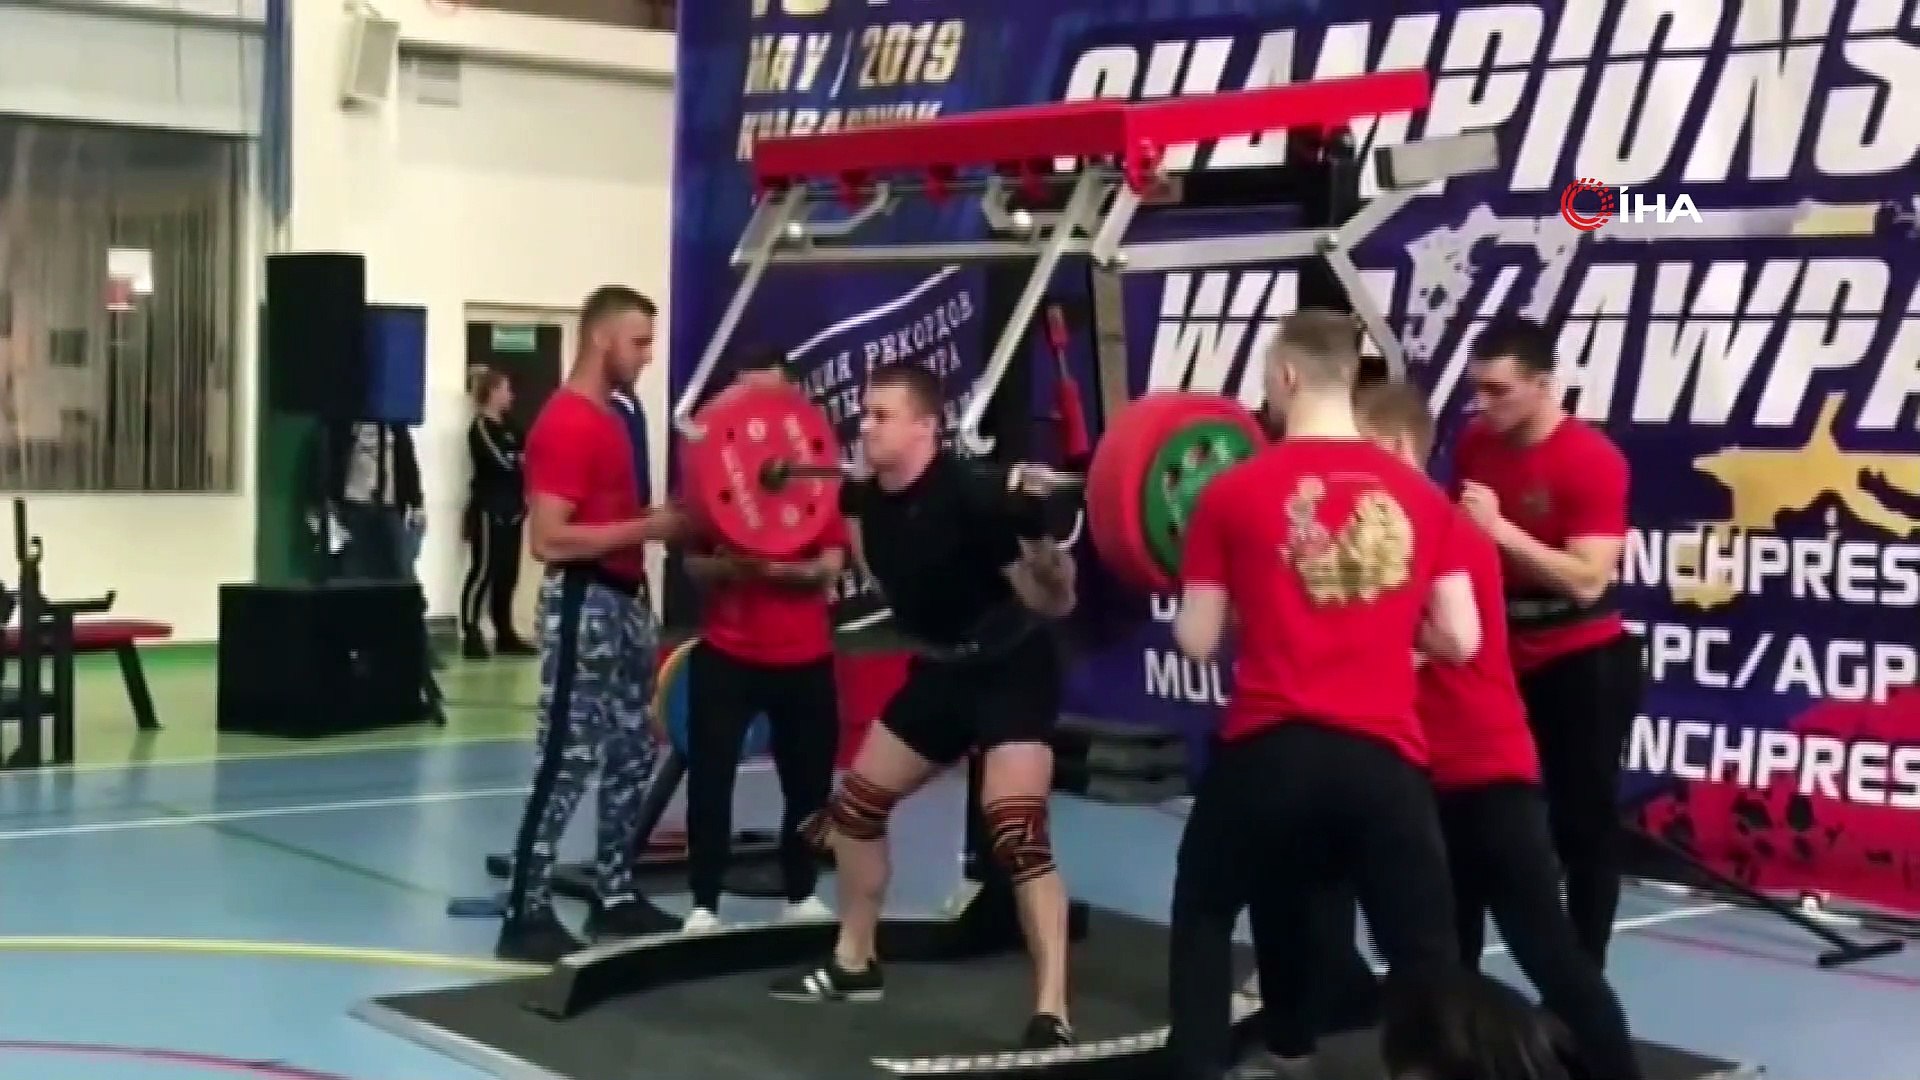 Rus halterci 250 kiloluk halteri kaldıramayınca bacakları kırıldı -  Dailymotion Video